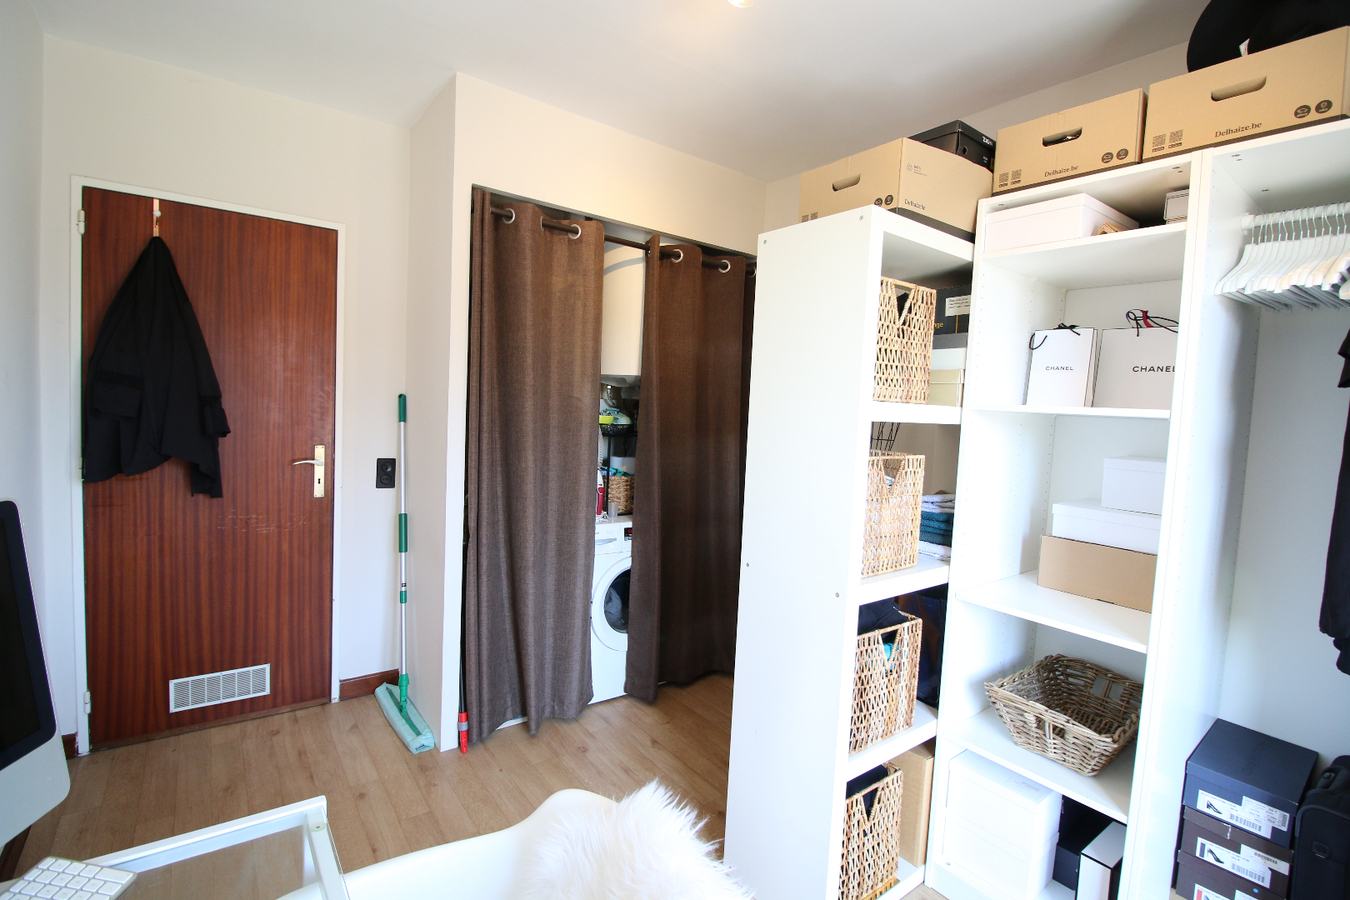 Appartement met 2 slaapkamers in Gent! 